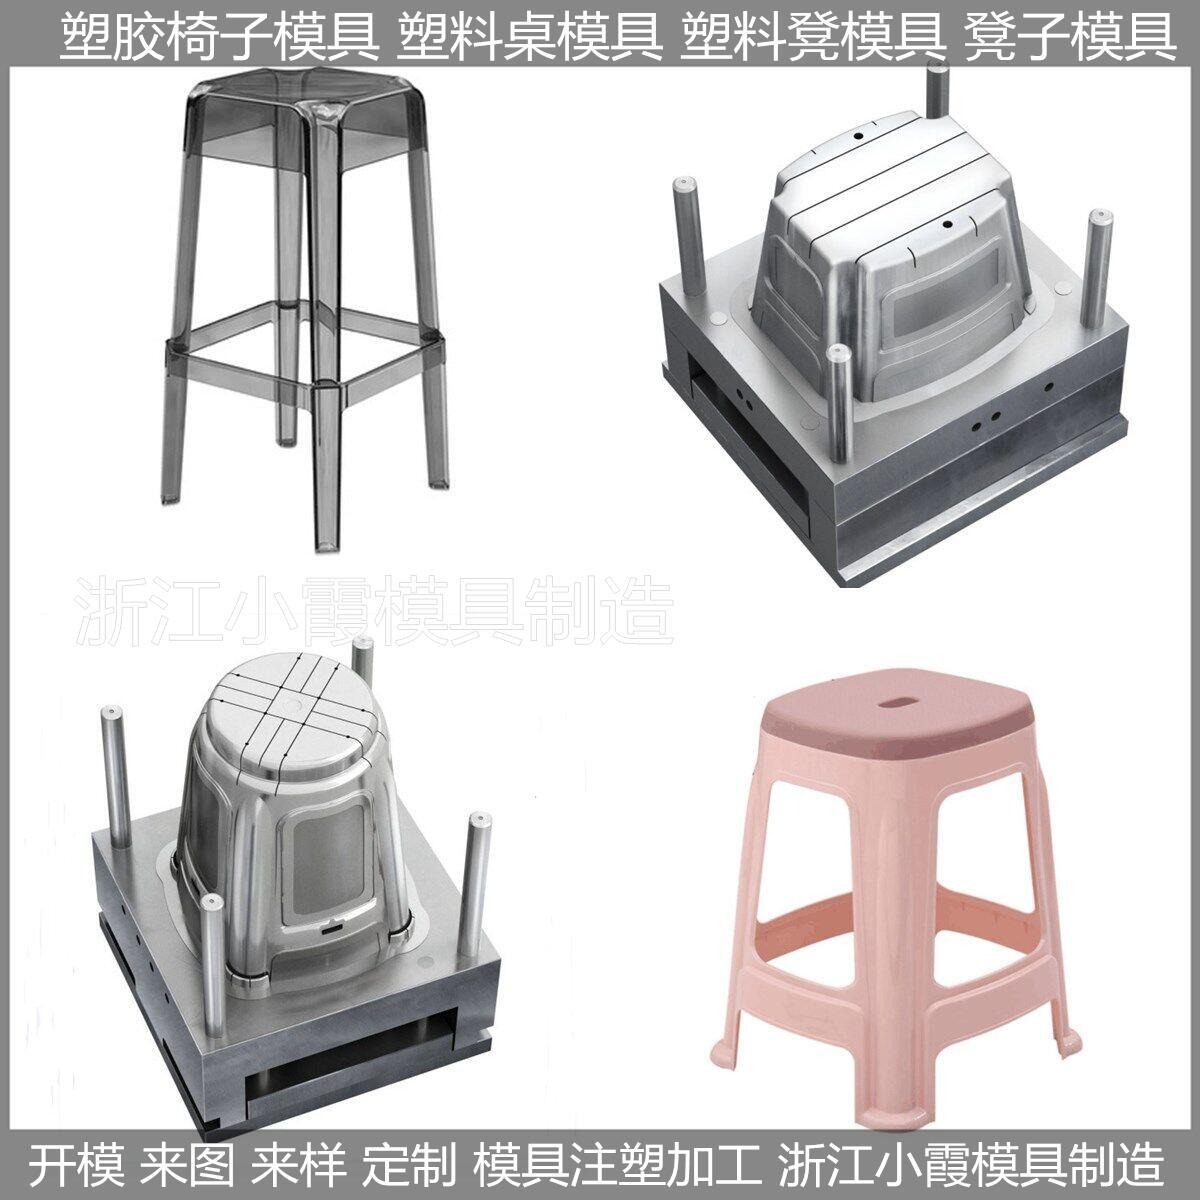 凳子塑料模具	凳子模具	凳子塑胶模具	凳子注塑模具  /注塑成型加工图片